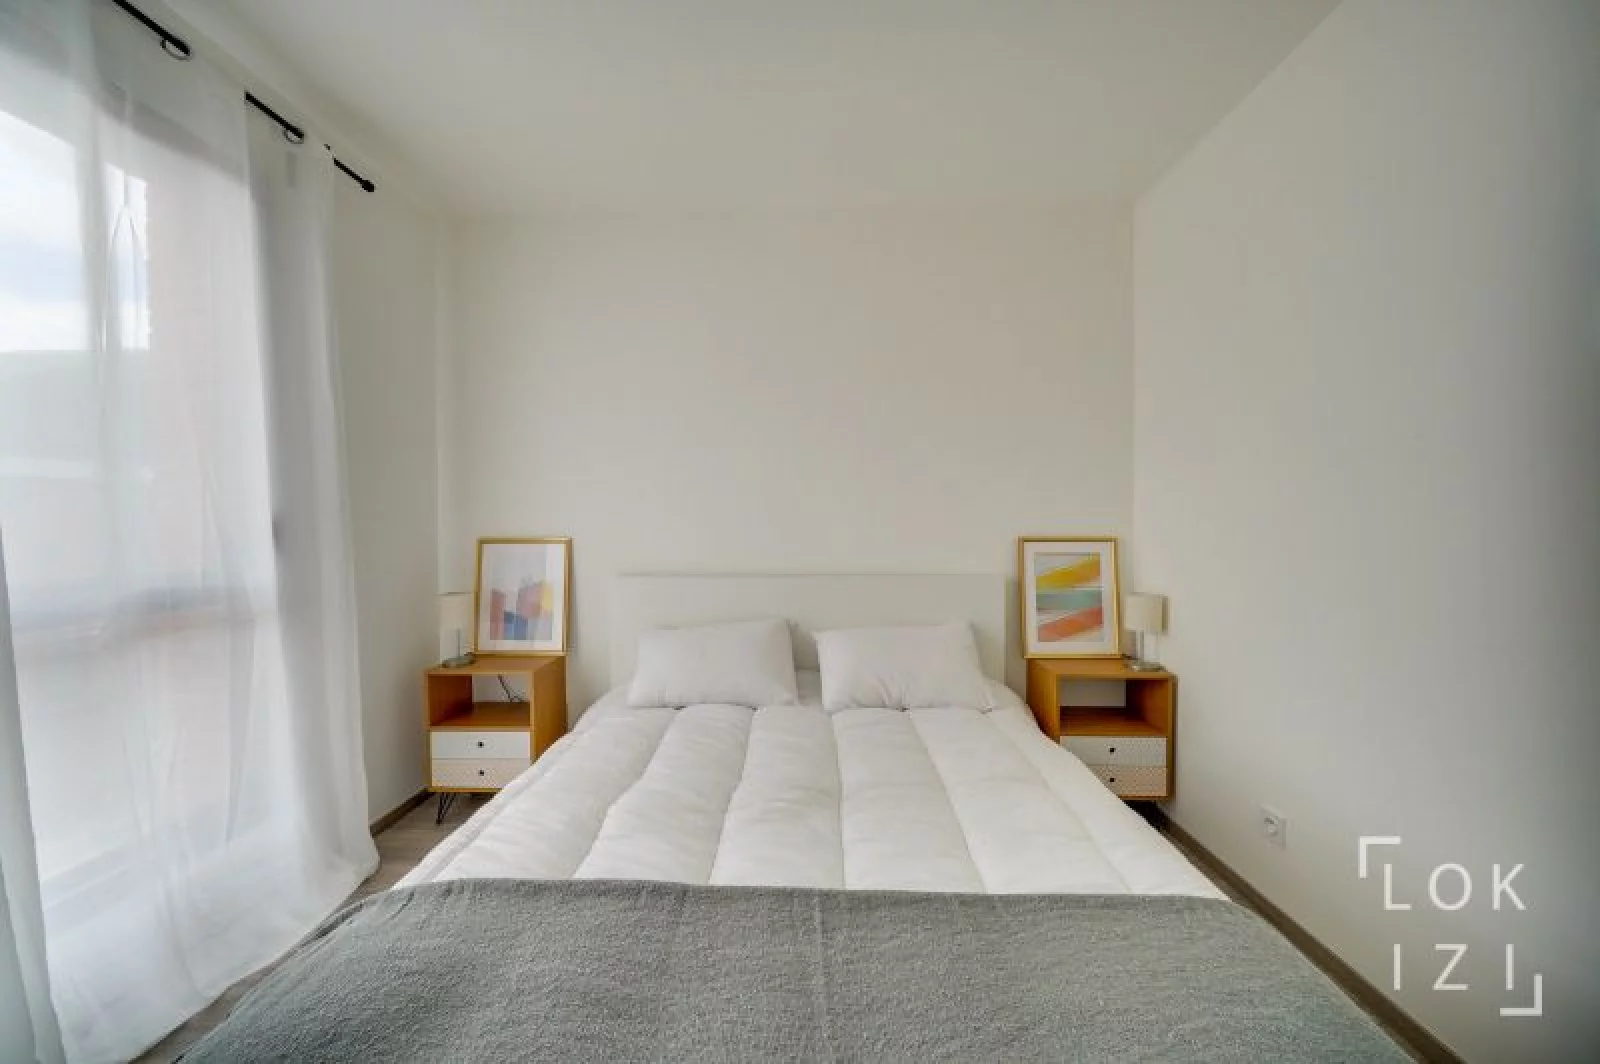 Location appartement meublé 4 pièces 90m² (Bordeaux - Bègles)